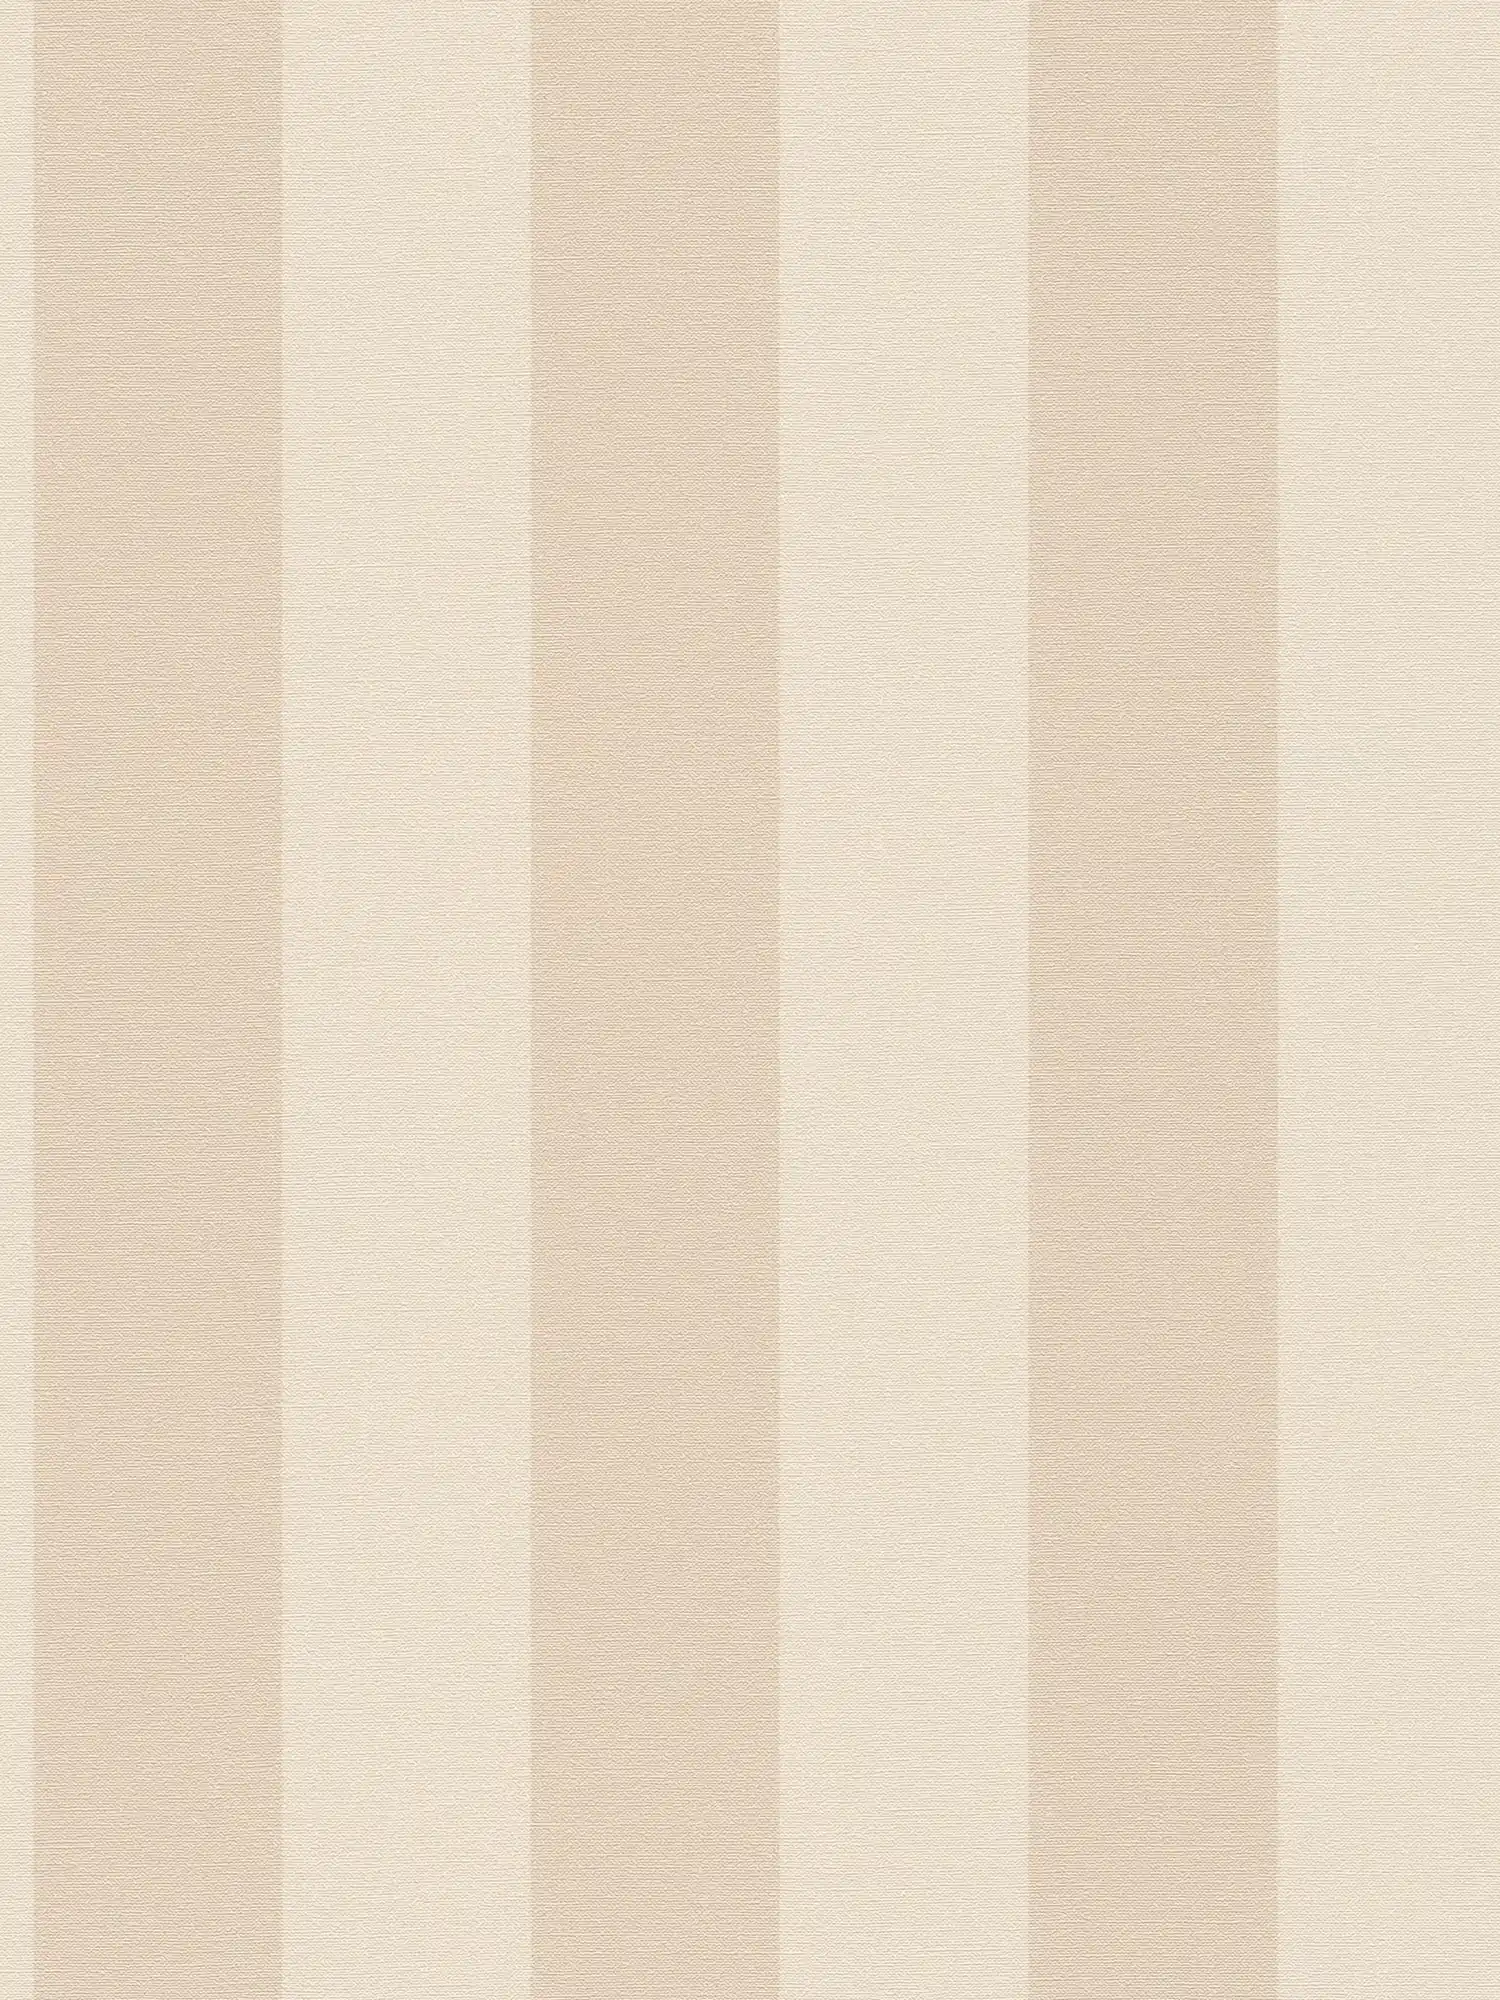 Carta da parati in tessuto non tessuto a righe e aspetto lino senza PVC - beige, bianco
